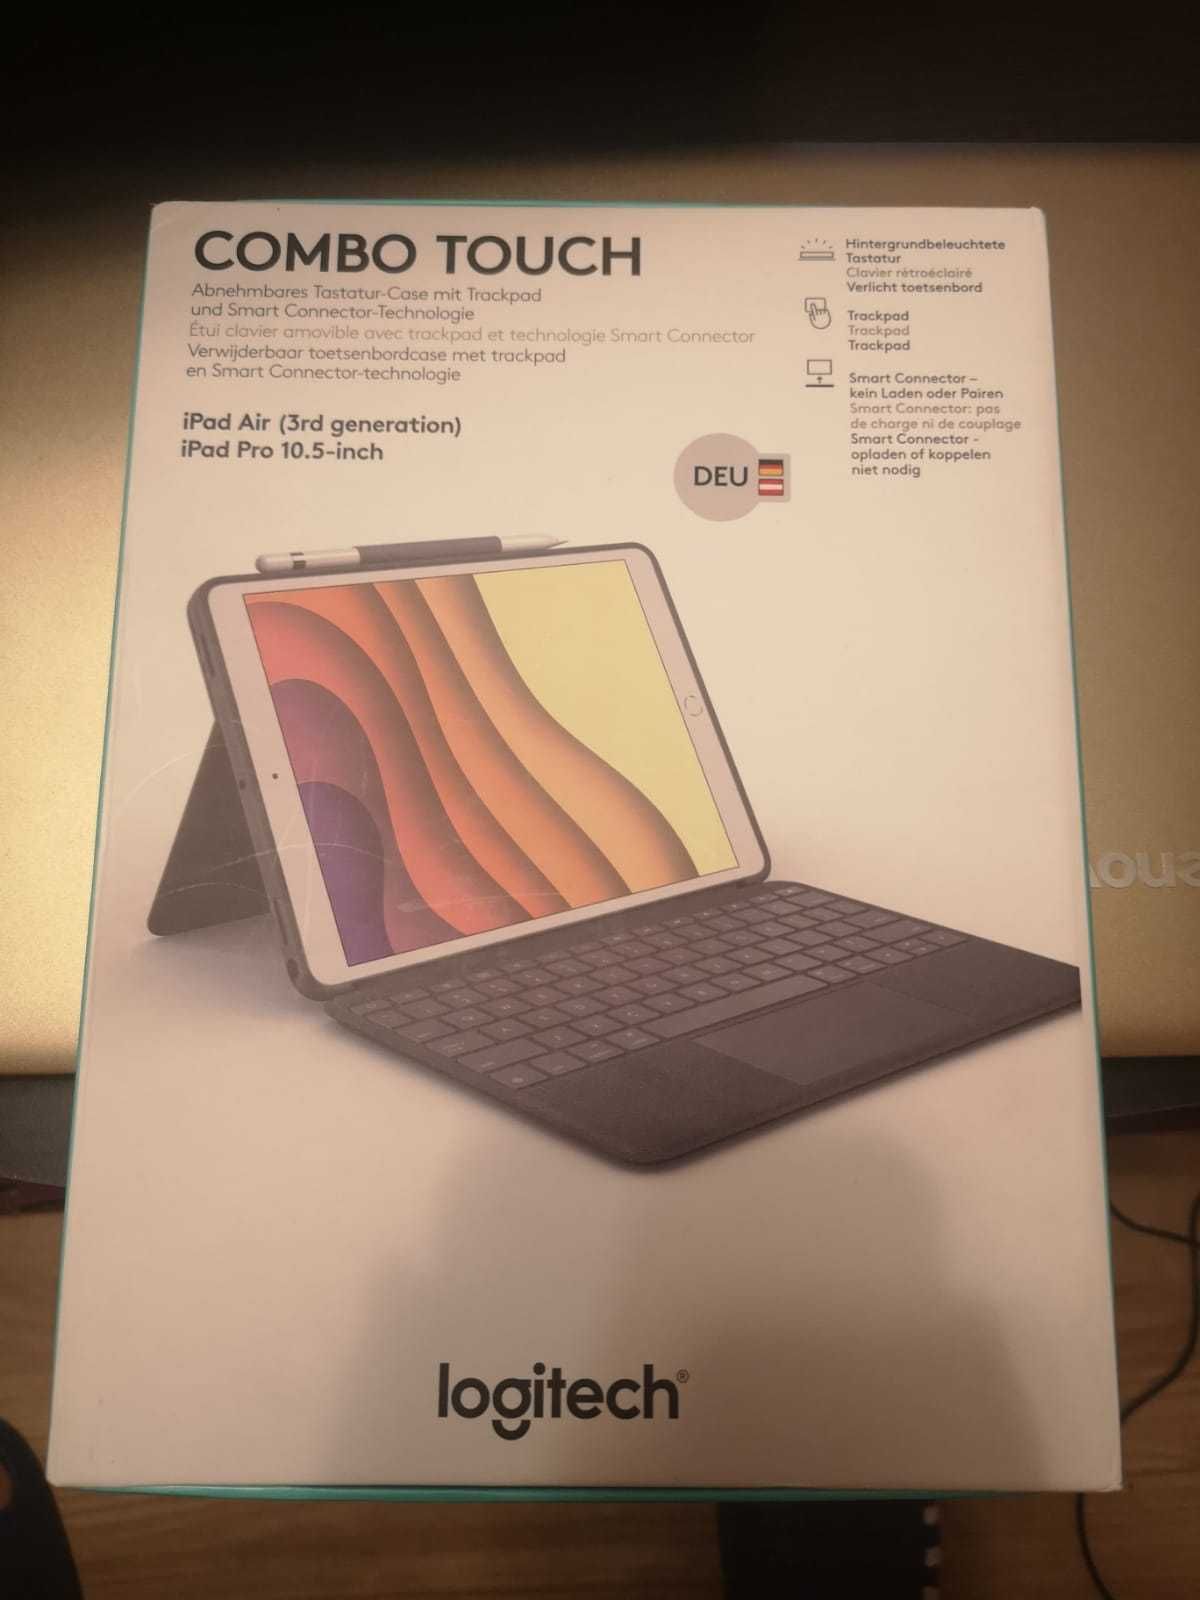 Husa Logitech Combo Touch  iPad Air (gen 3) iPad Pro 10.5-inch  nou